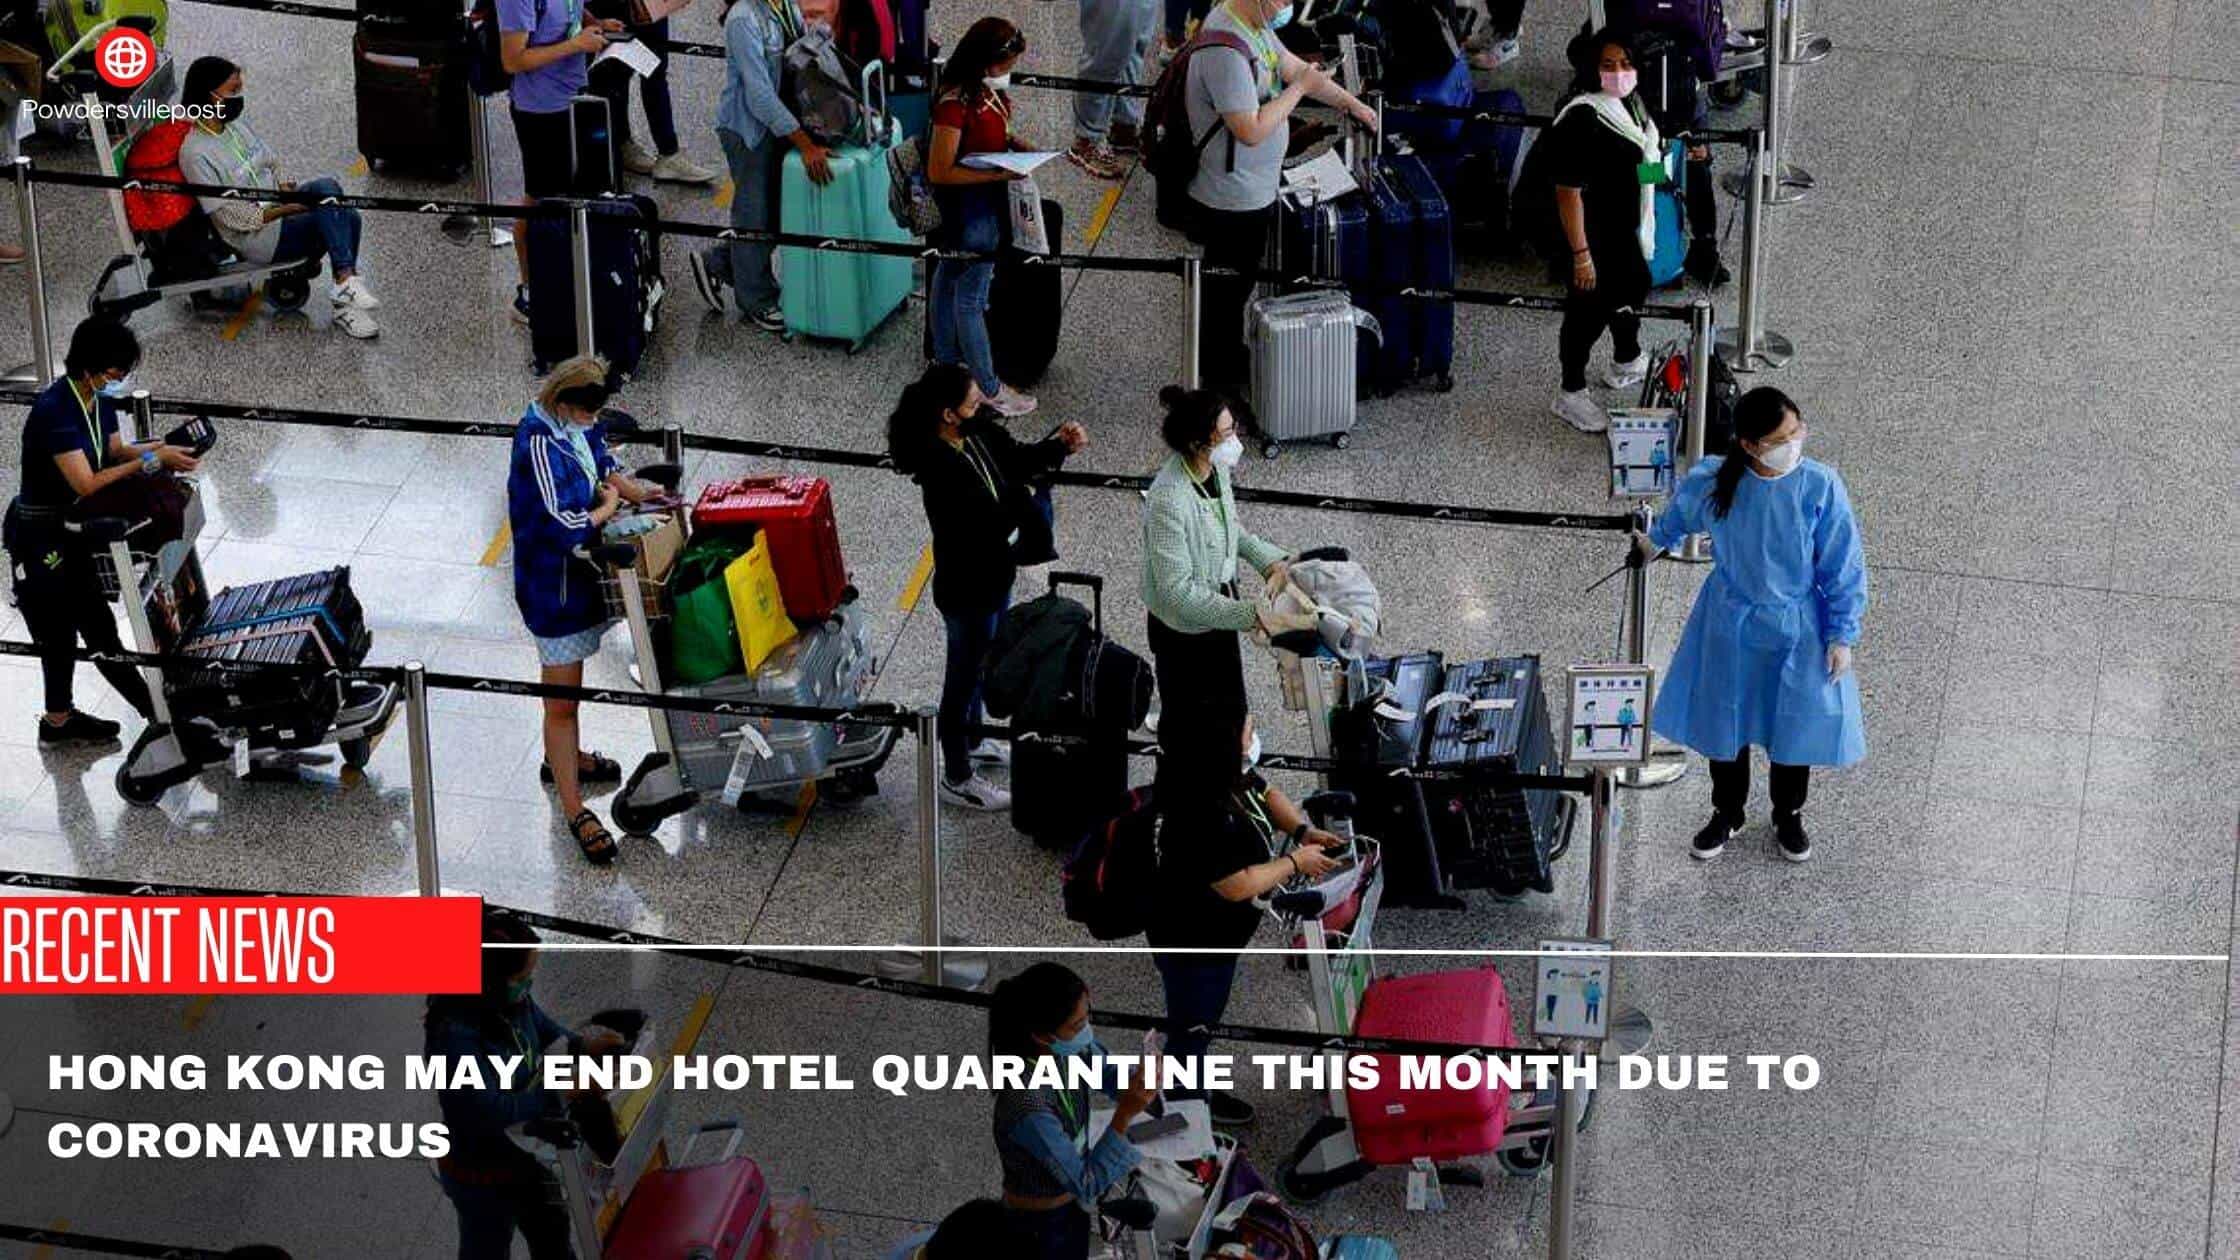 Hong Kong May End Hotel Quarantine This Month Due To Coronavirus